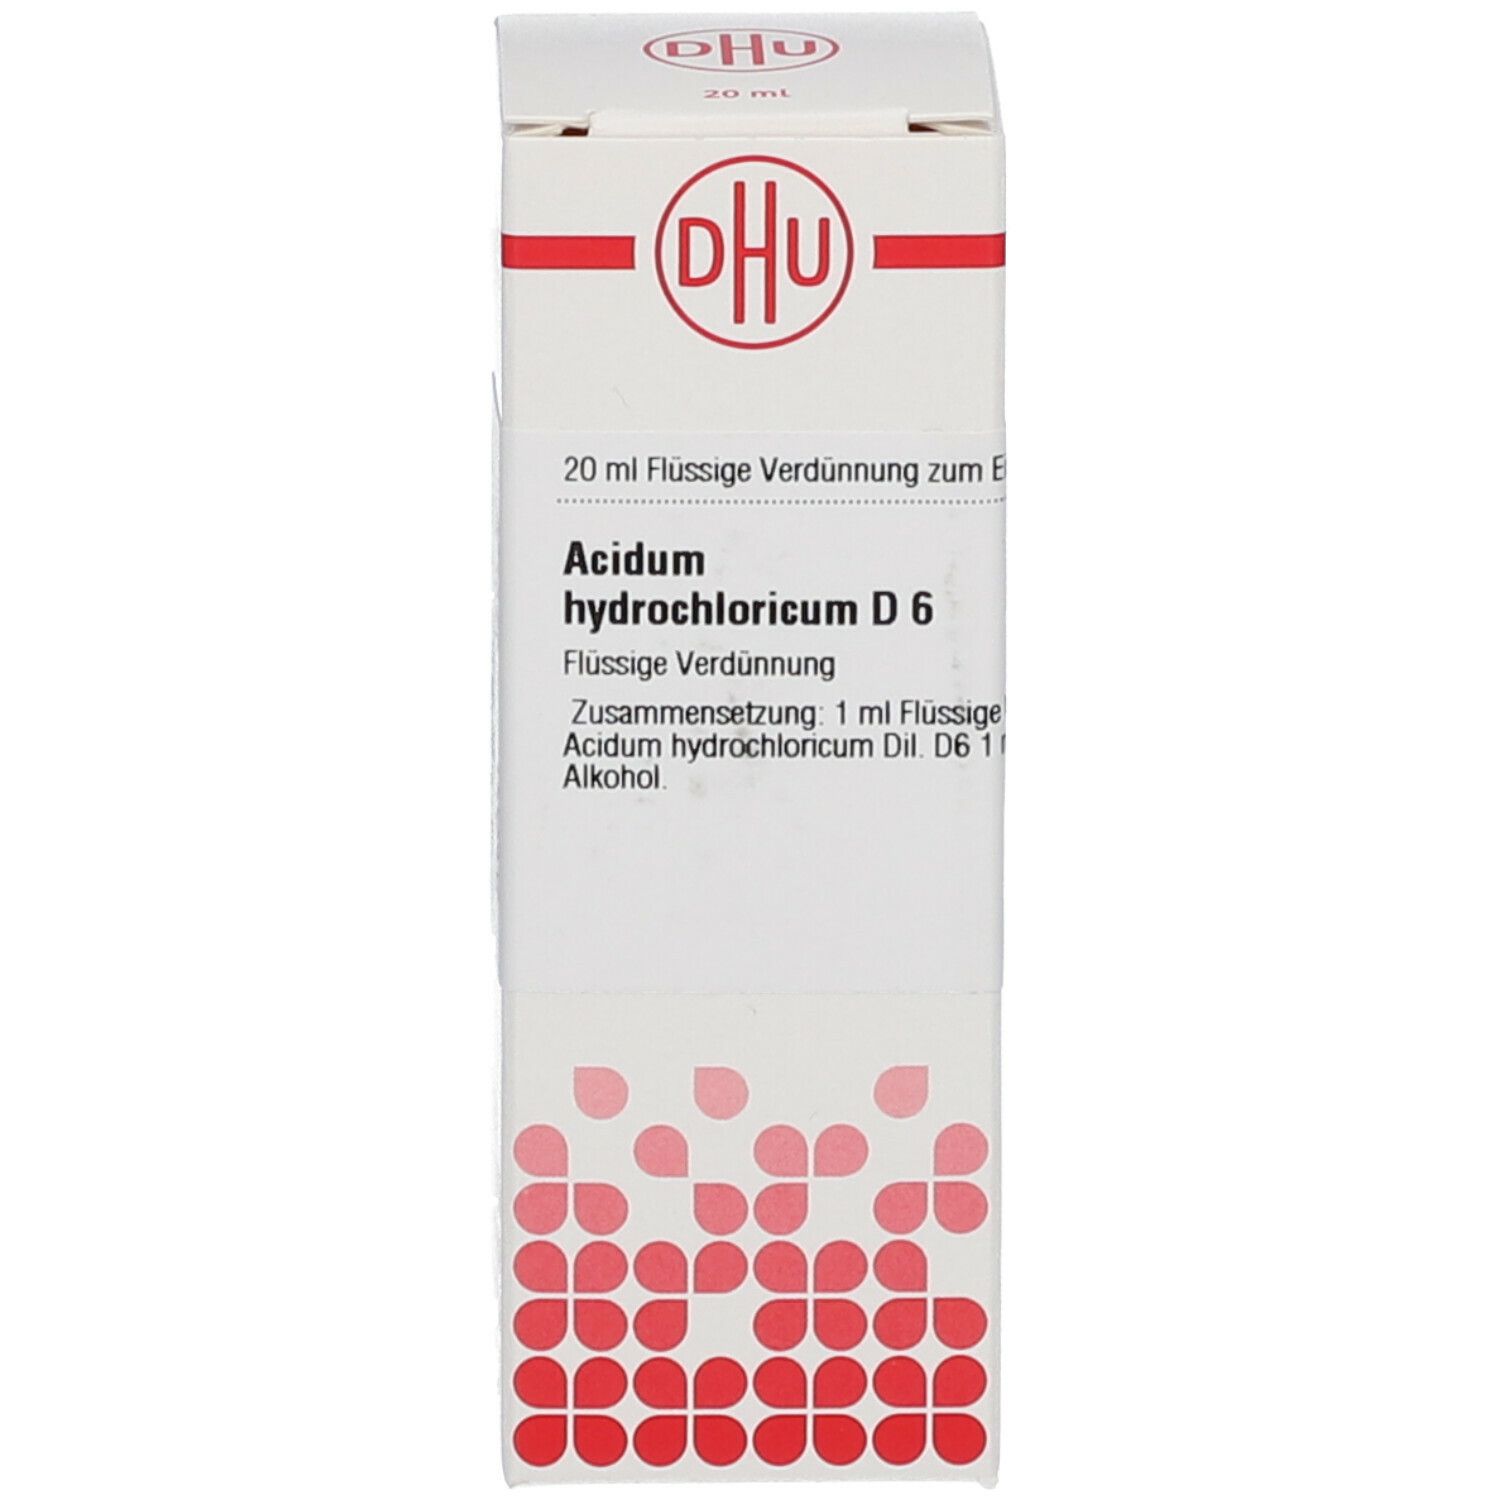 DHU Acidum Hydrochloricum D6